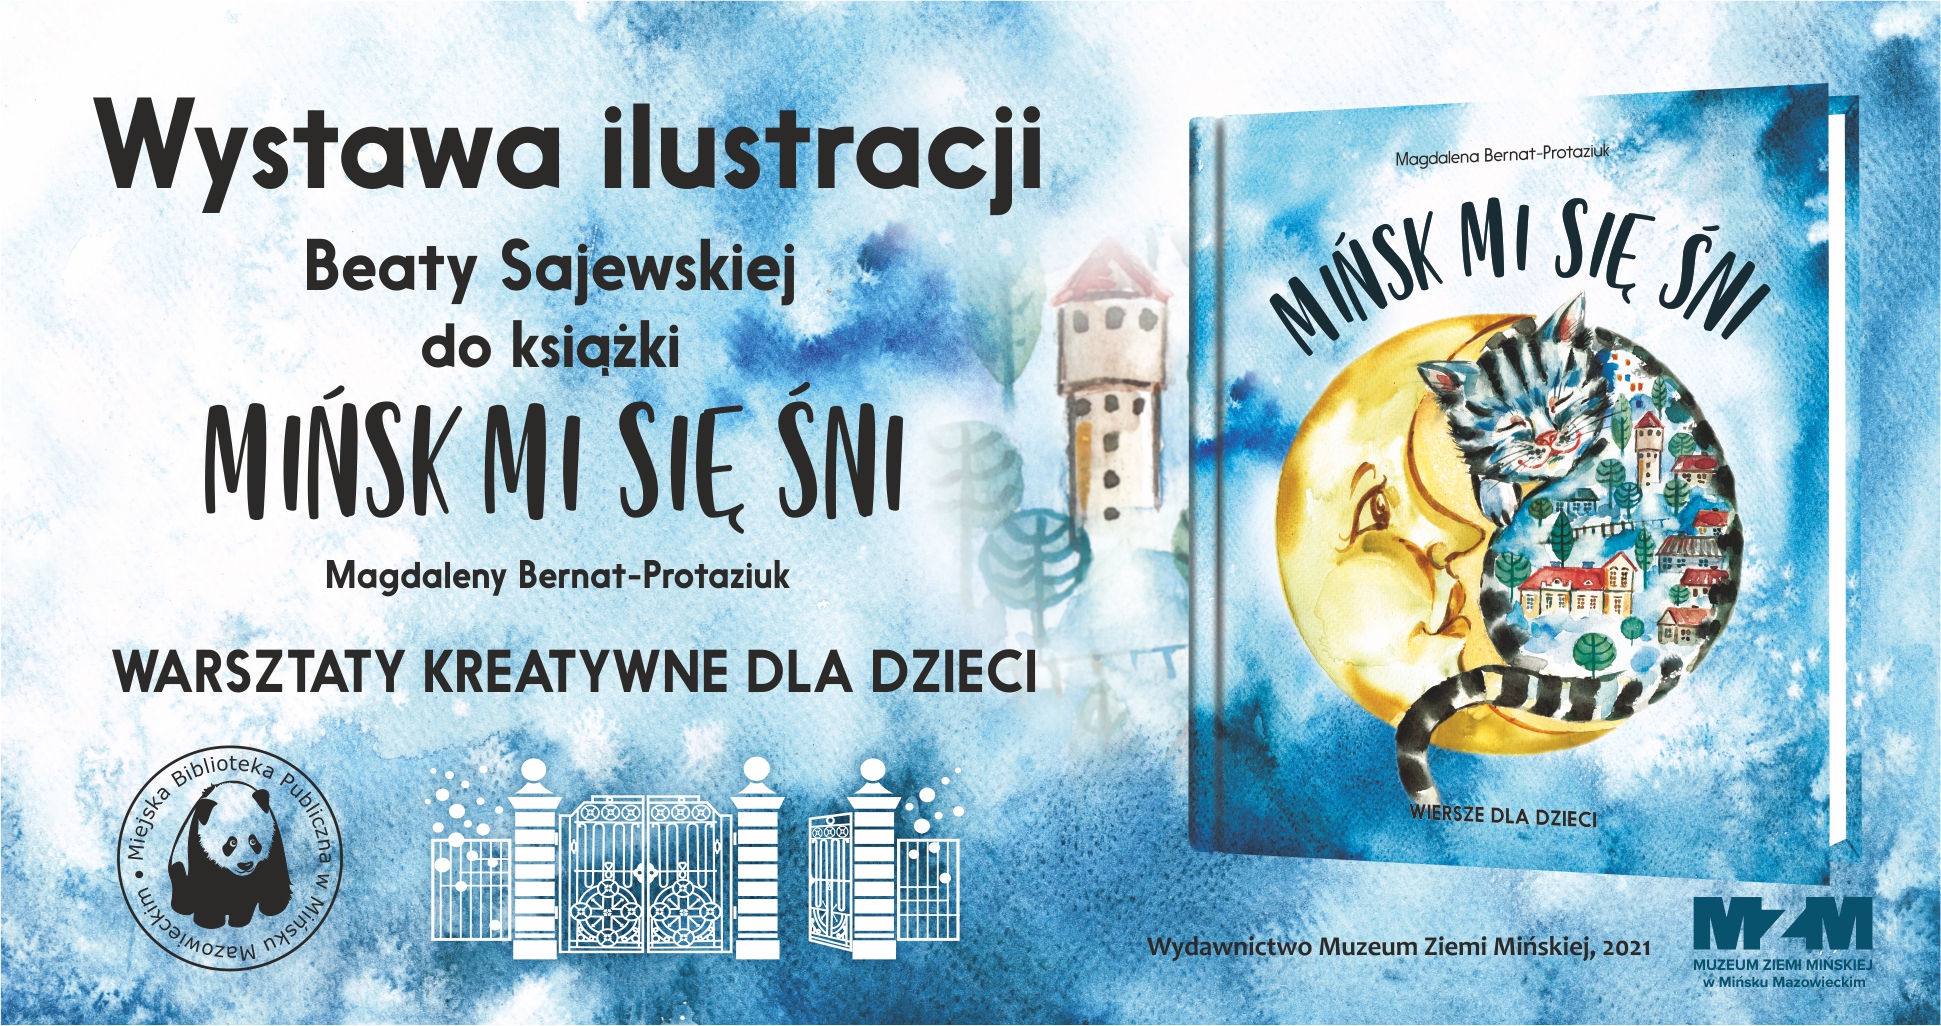 Wystawa ilustracji Beaty Sajewskiej do książki „Mińsk mi się śni” w MBP